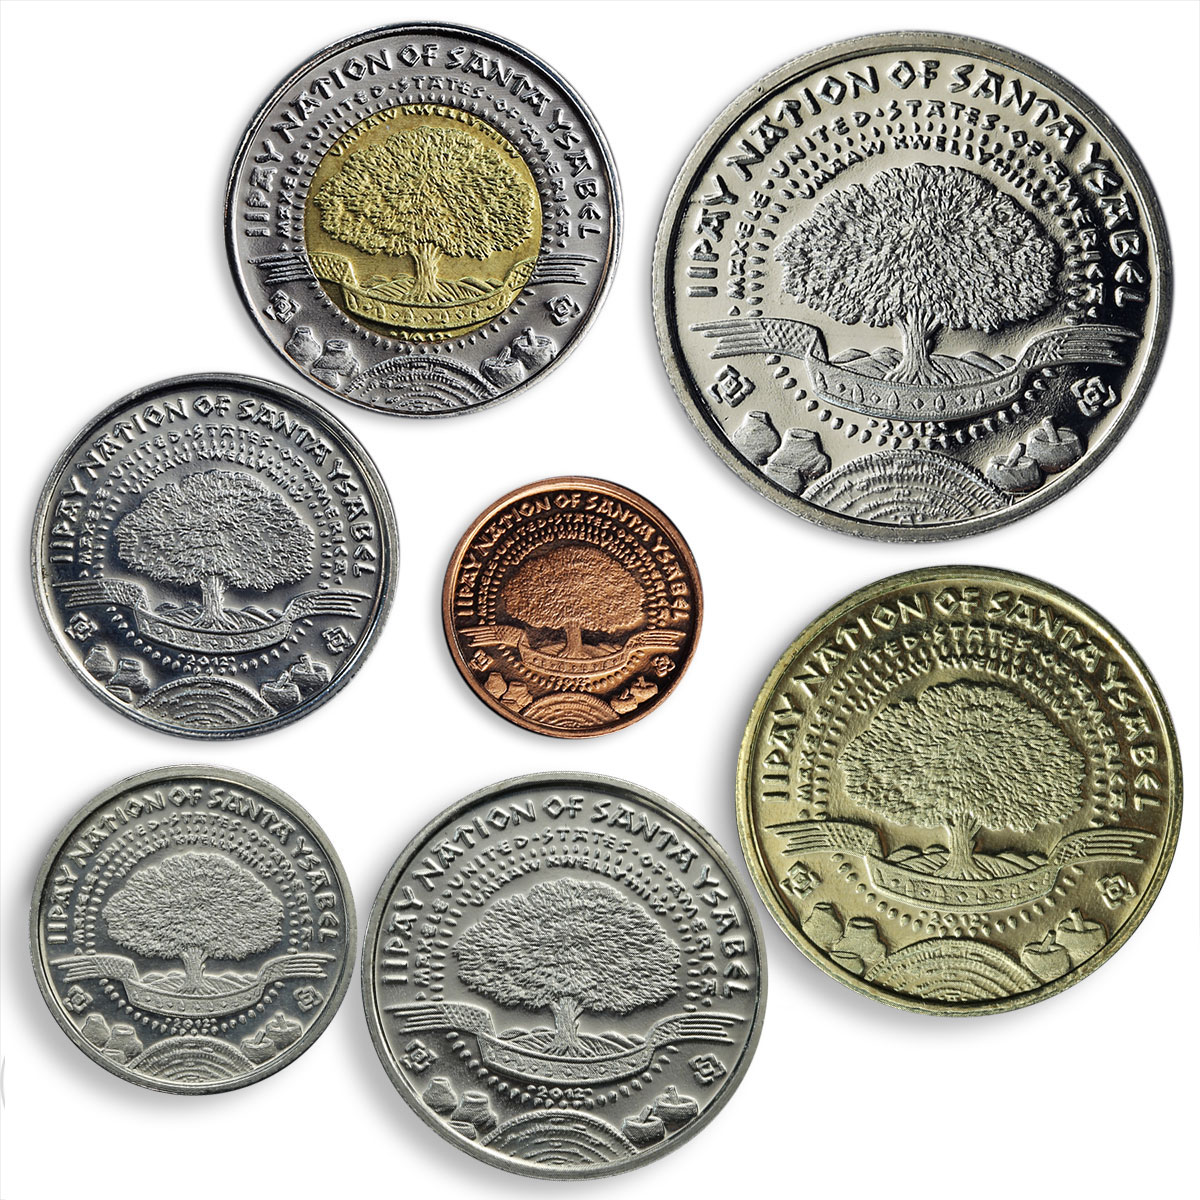 Santa Ysabel set of seven coins in 2012